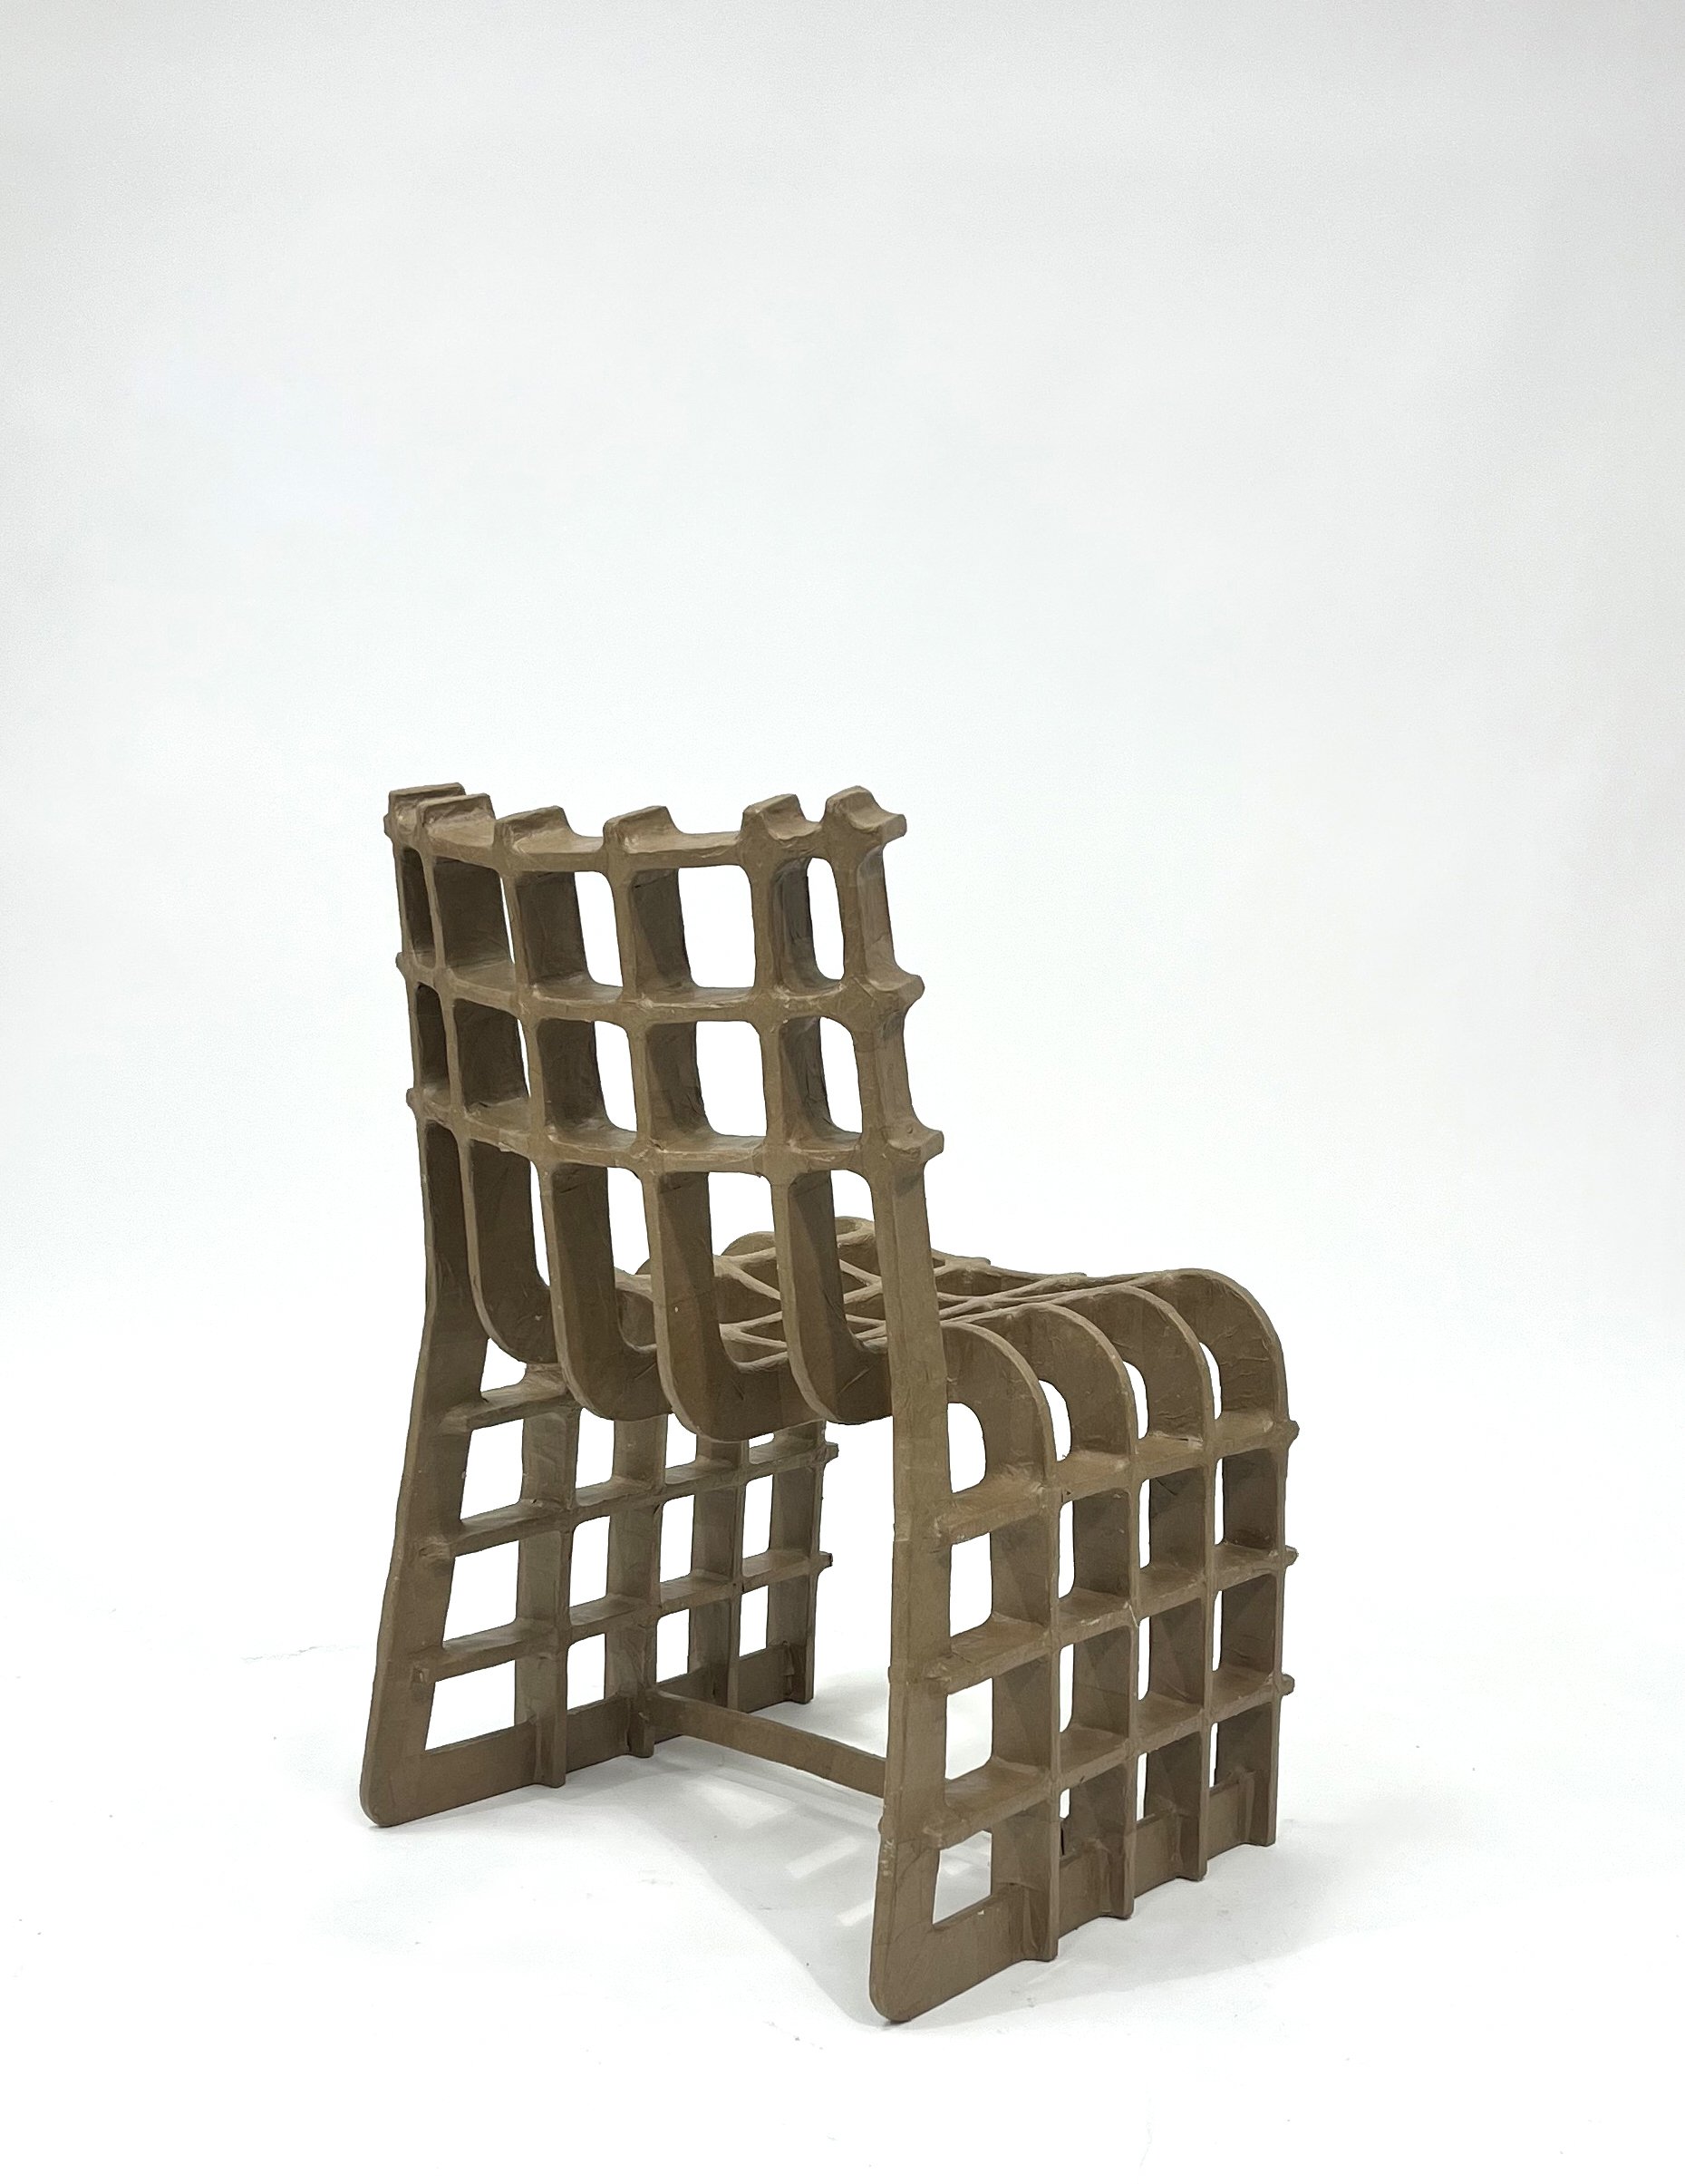 Chair 03V06 Back Isometric White.jpg